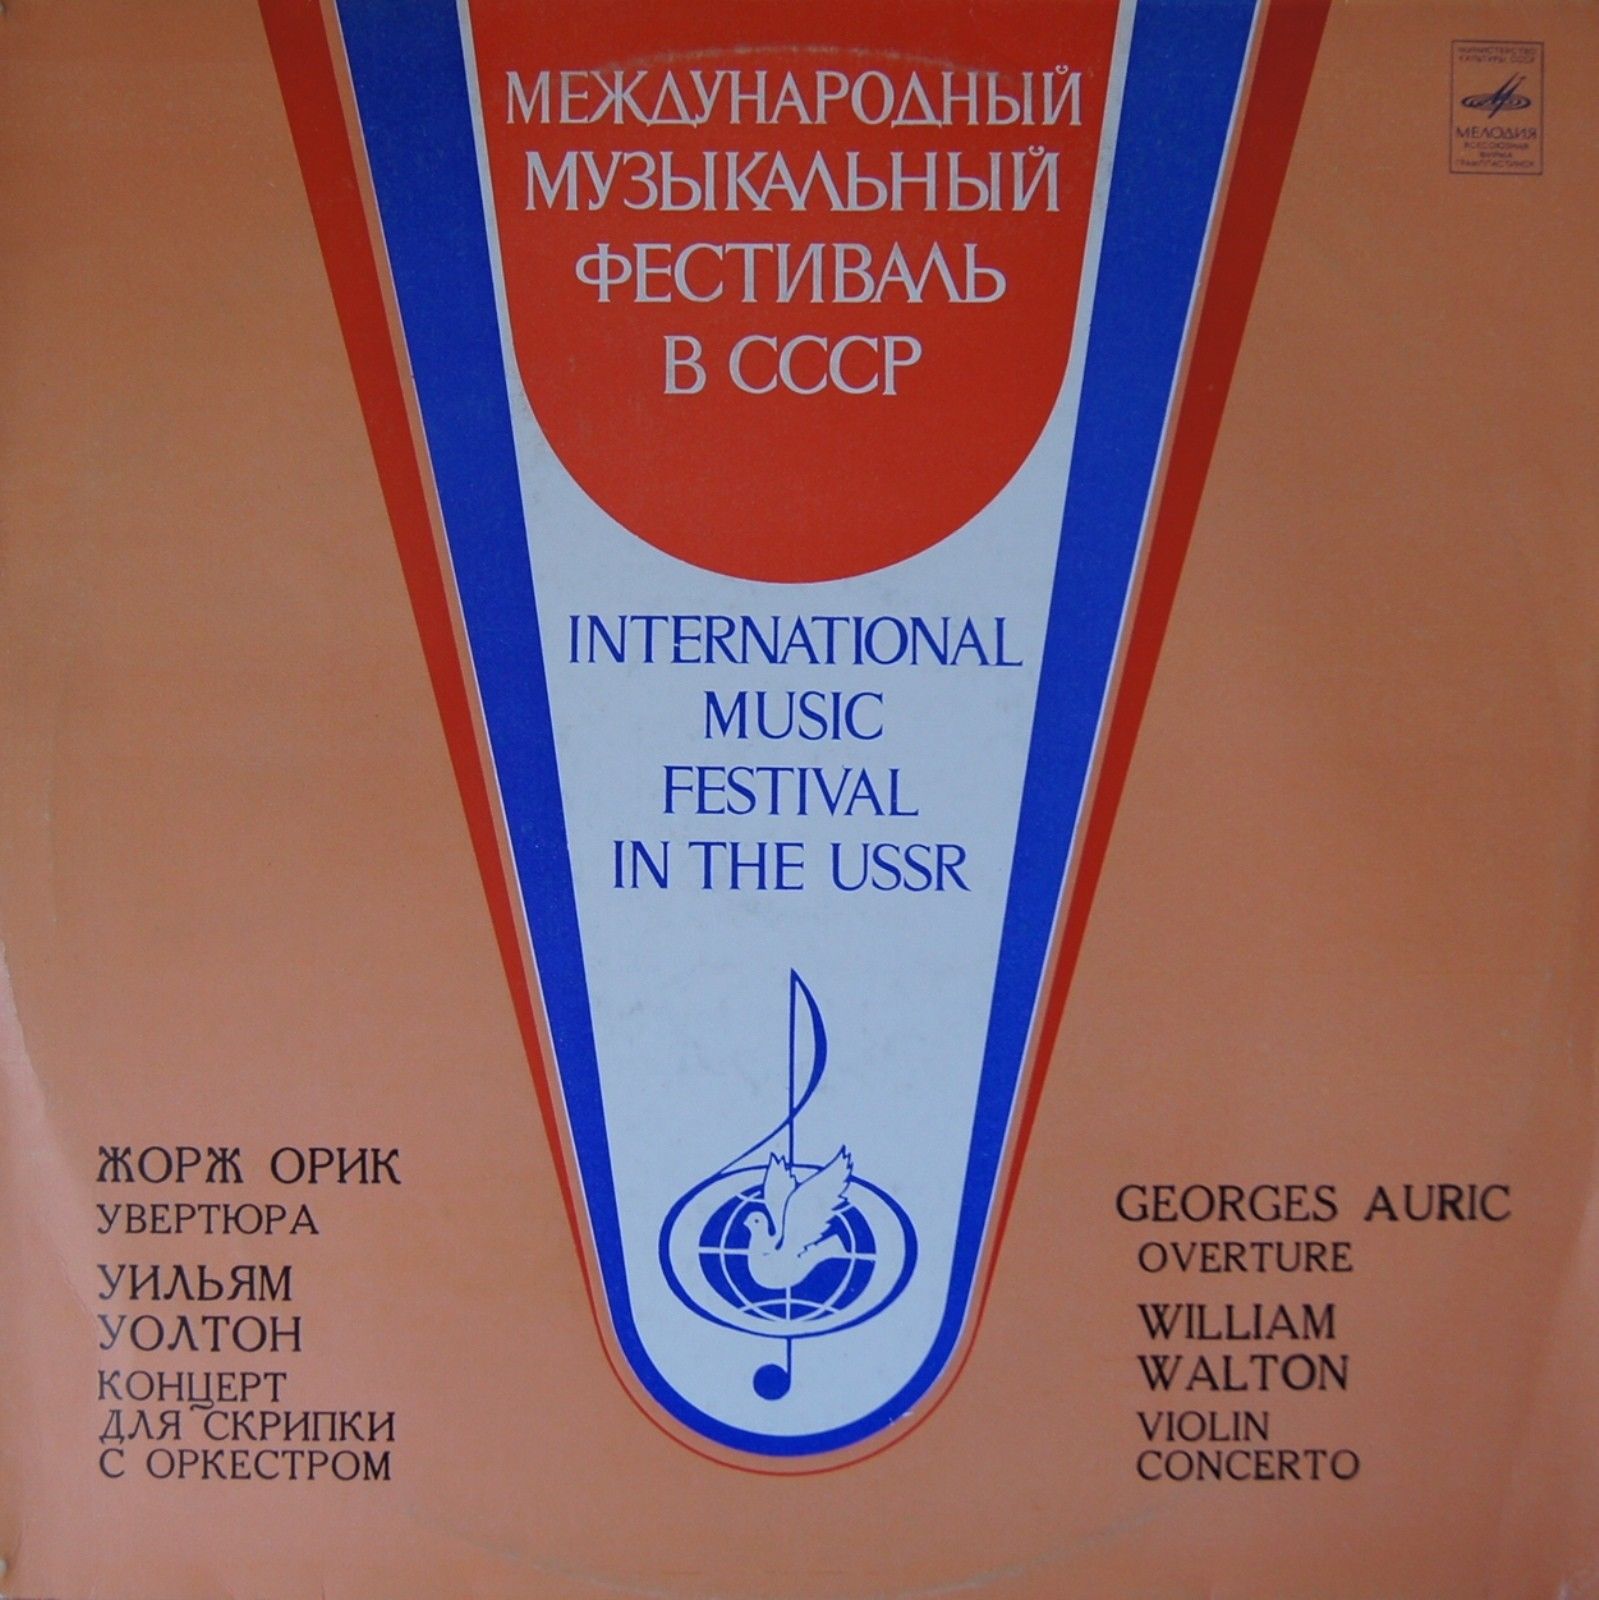 МЕЖДУНАРОДНЫЙ МУЗЫКАЛЬНЫЙ ФЕСТИВАЛЬ В СССР (Москва, май 1981 г.).